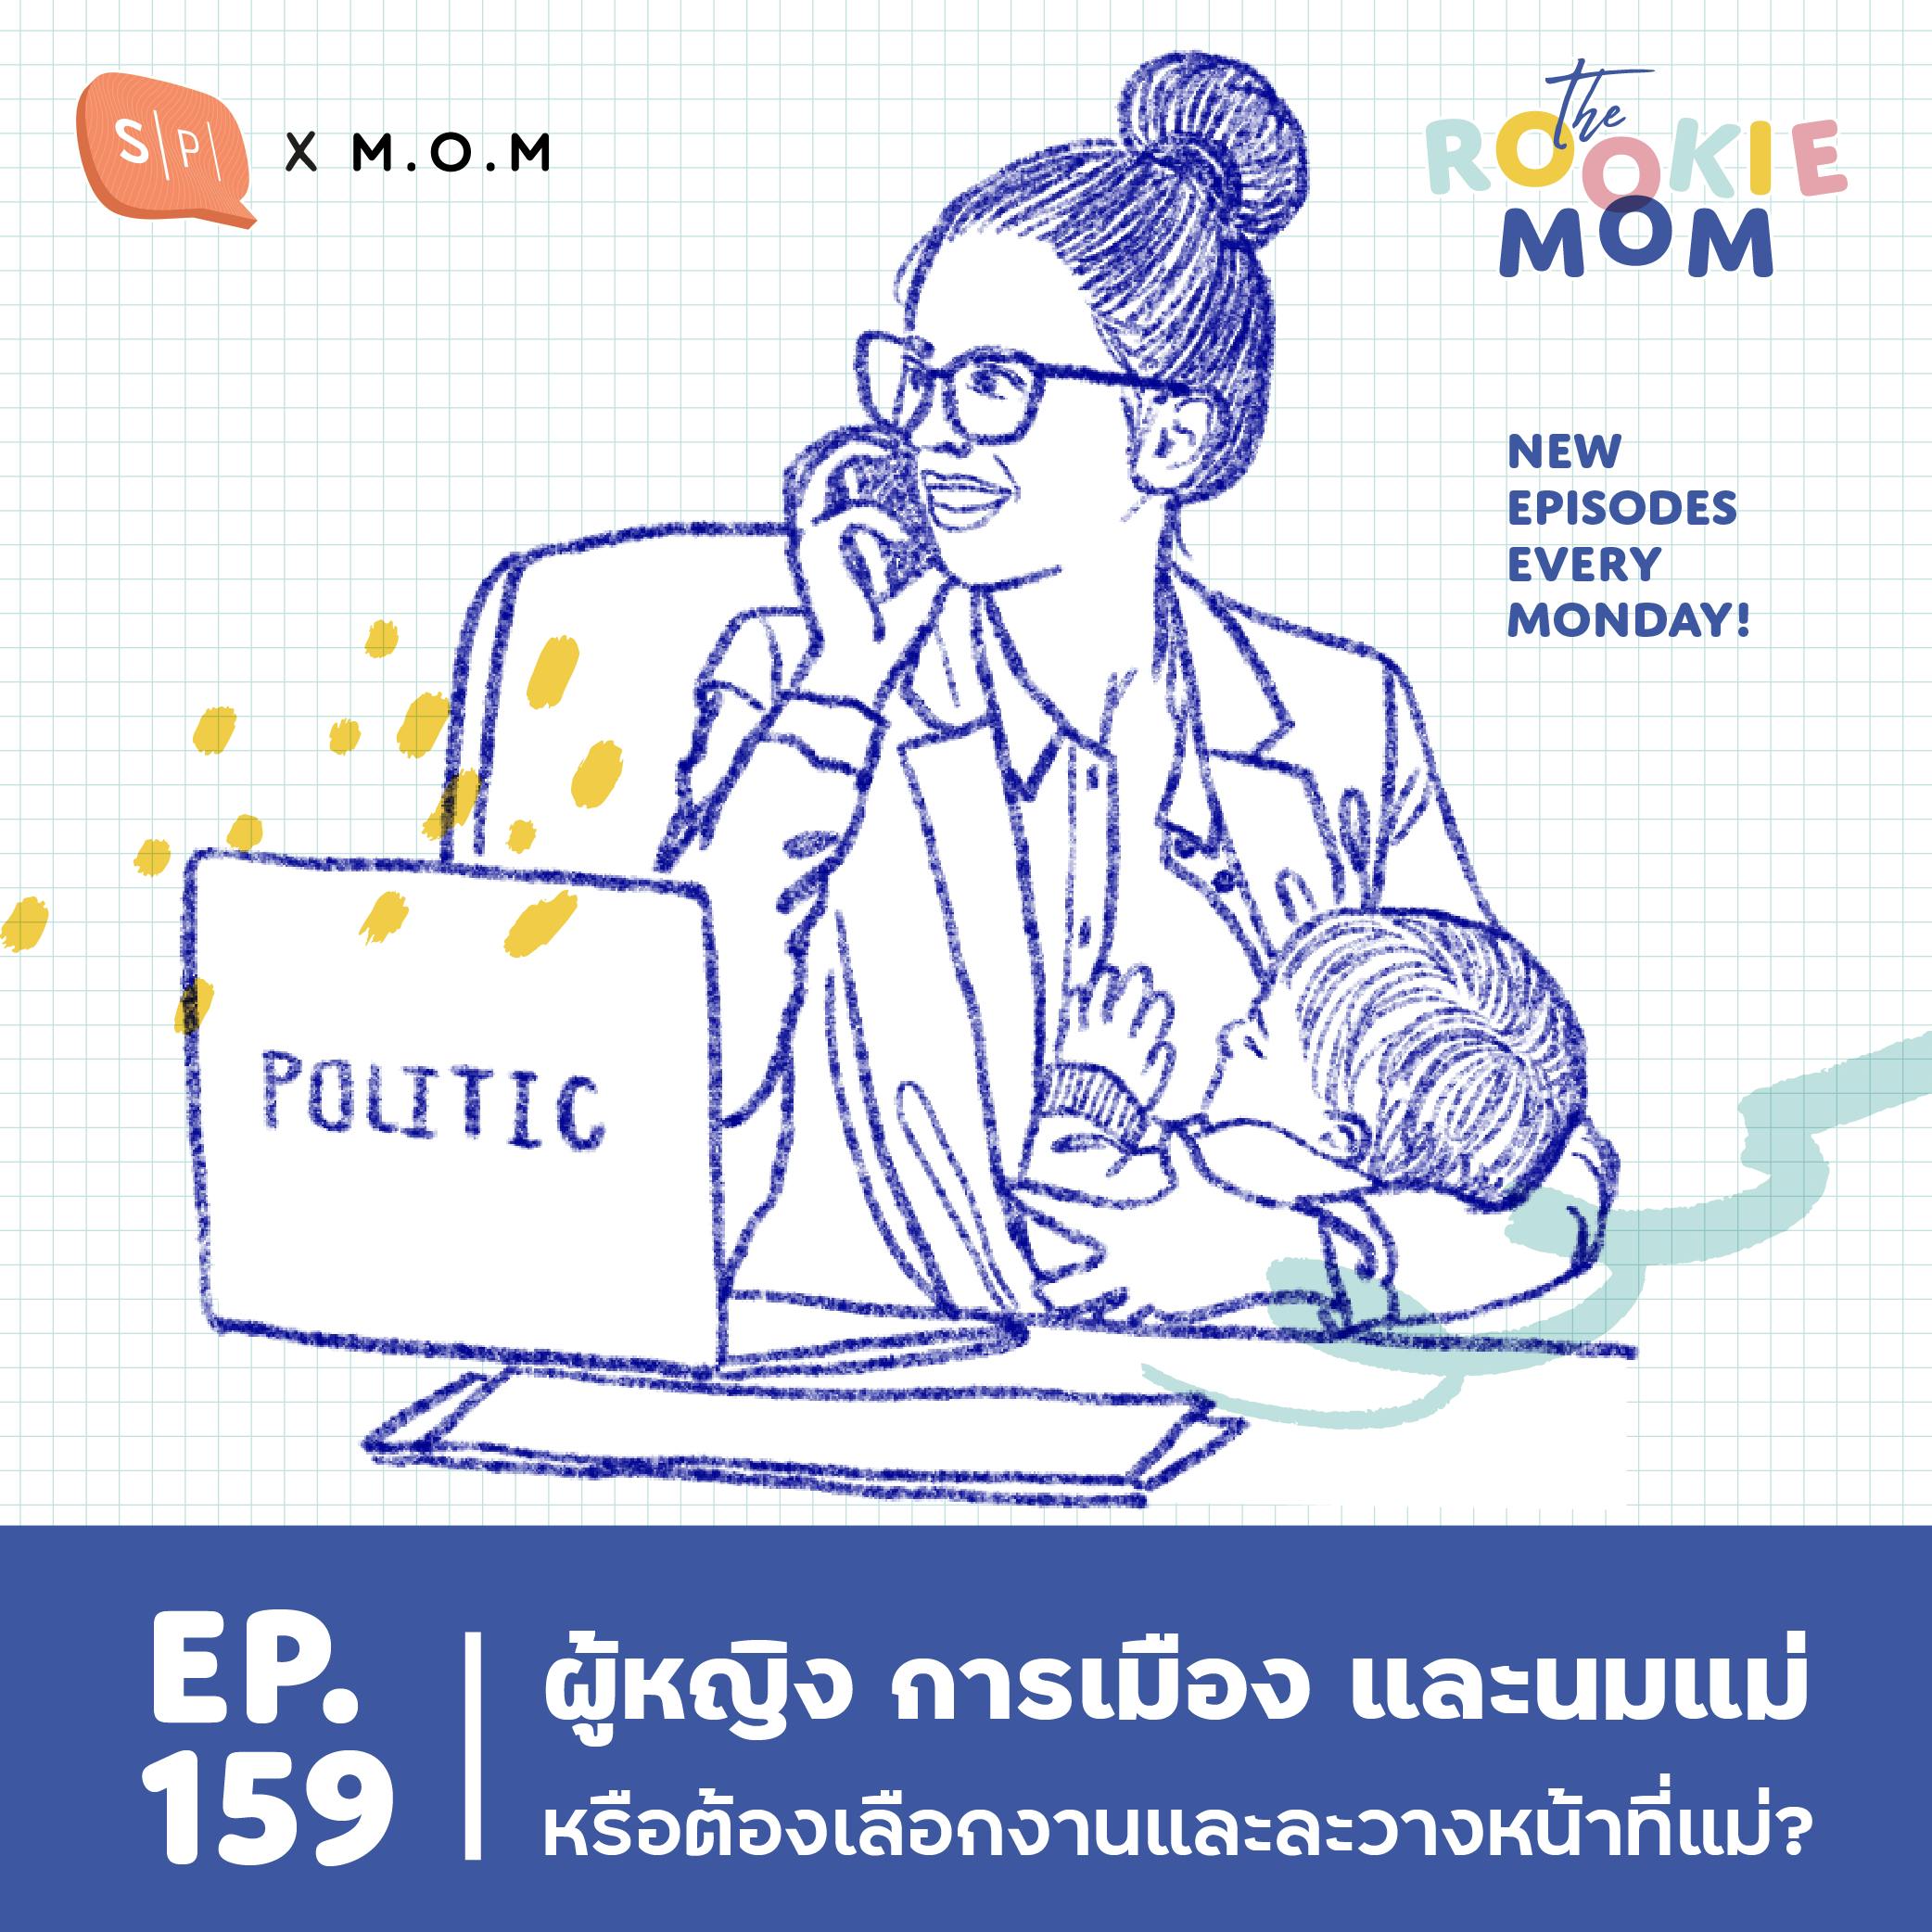 ผู้หญิง การเมือง และนมแม่ หรือต้องเลือกงานและละวางหน้าที่แม่? | EP159